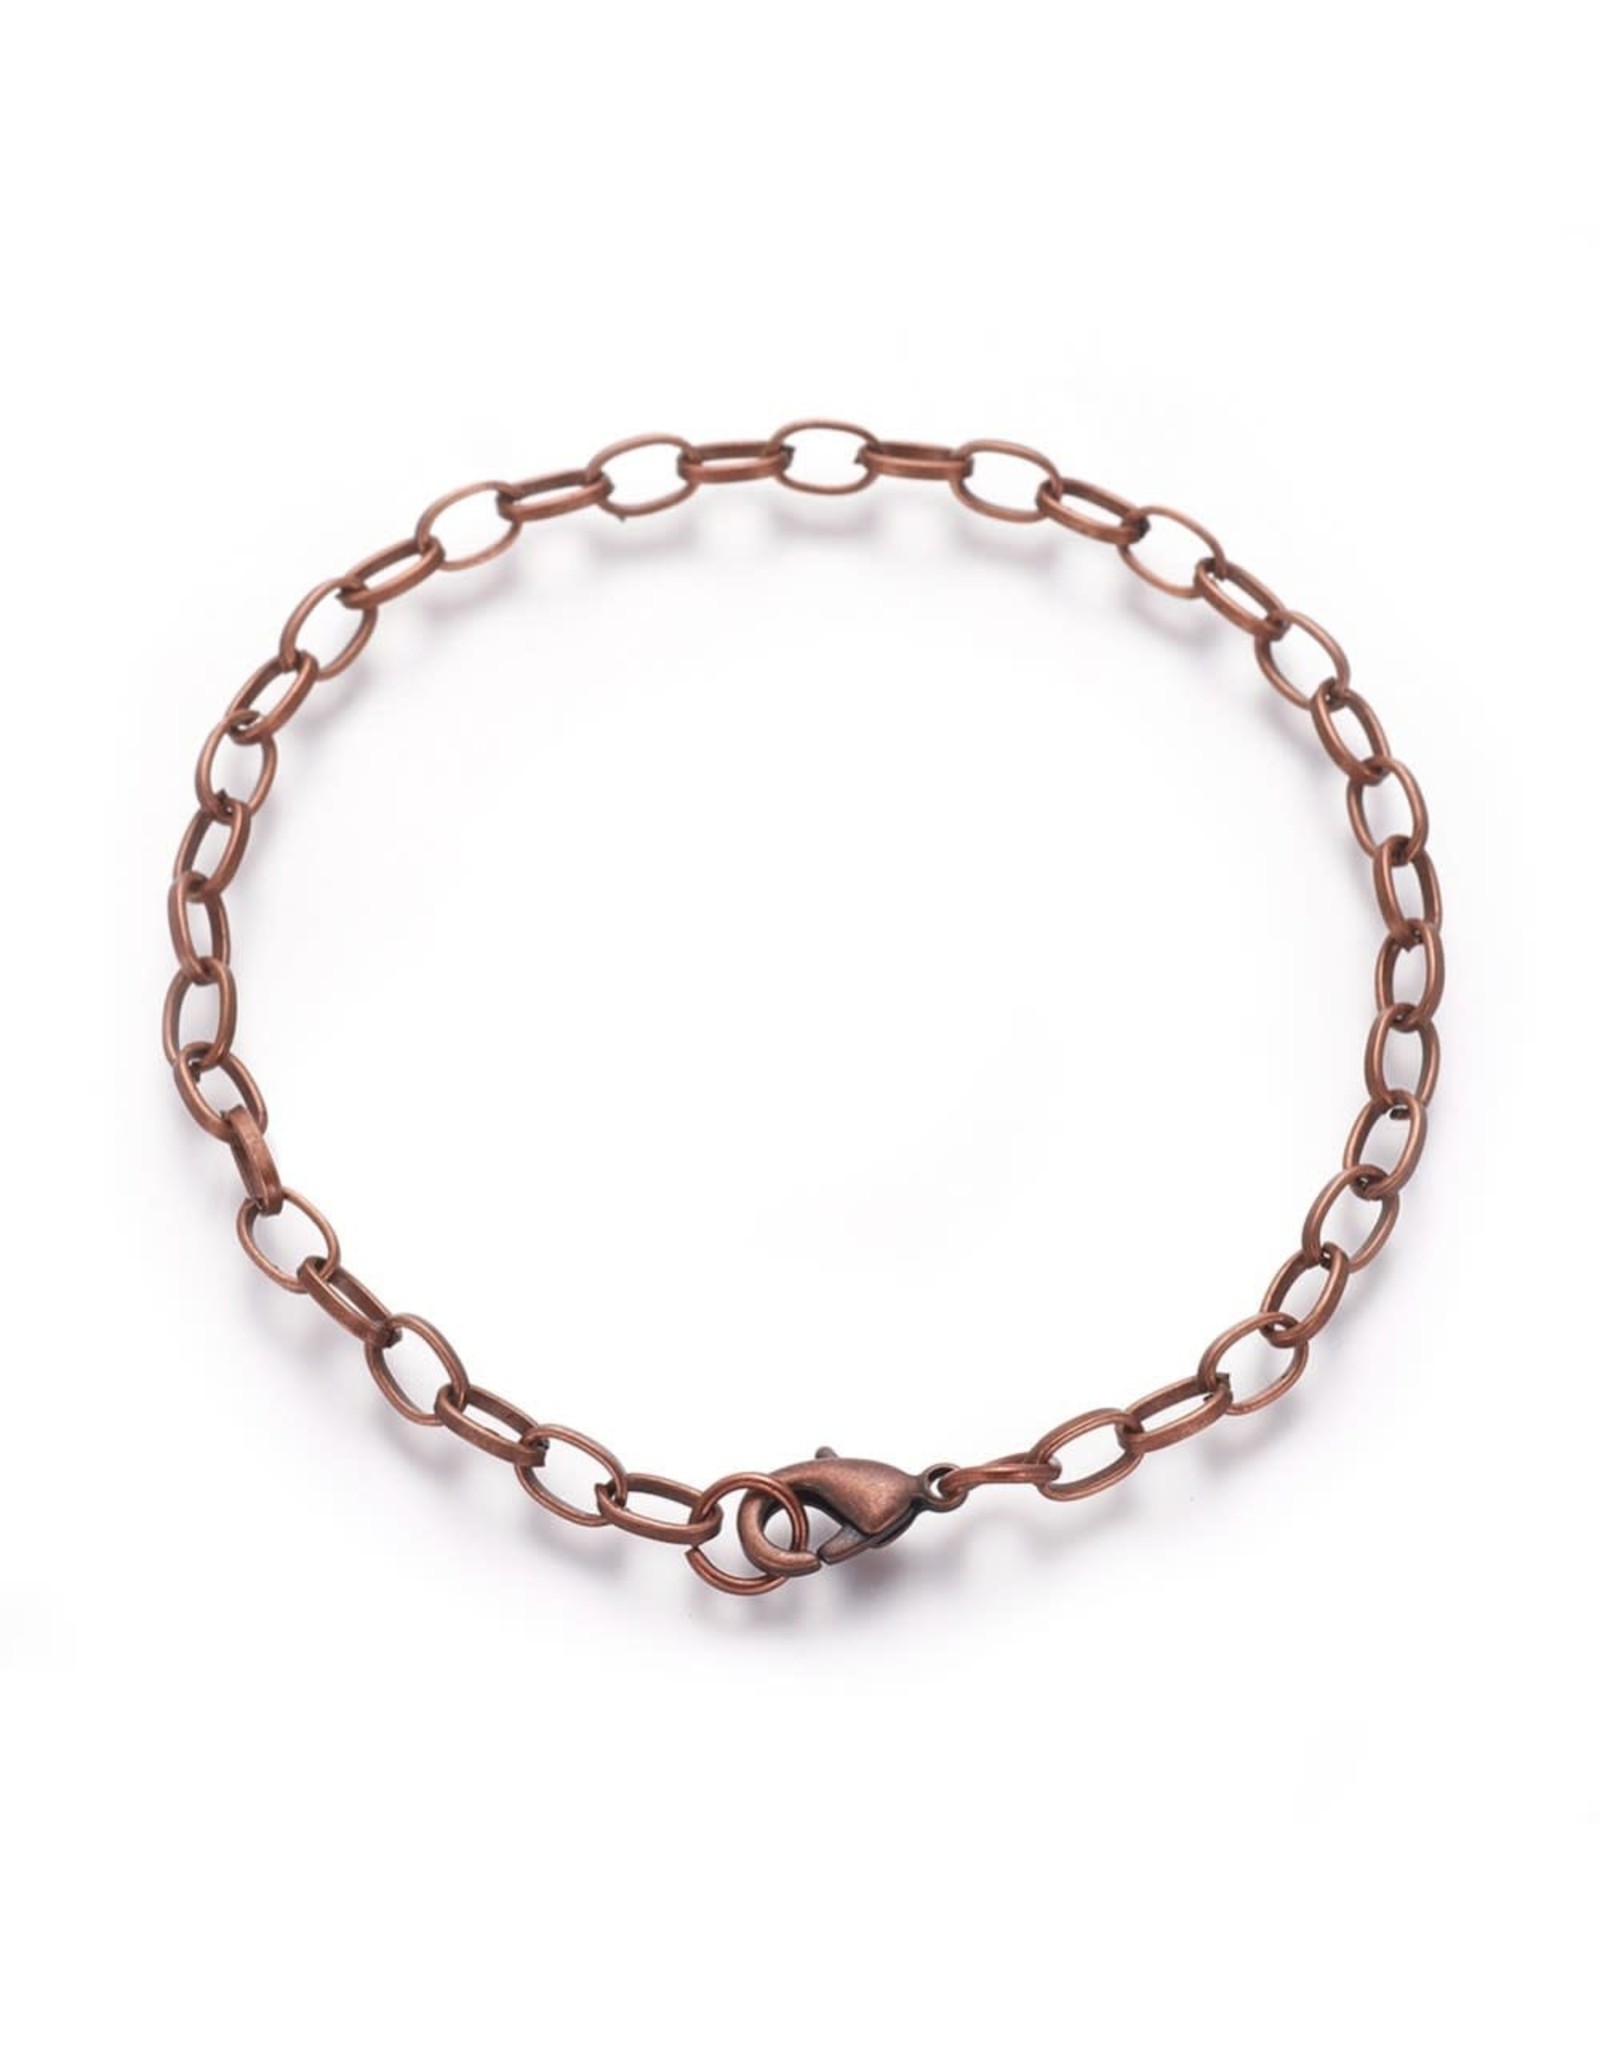 Bracelet Chain 8" Antique Copper  x5